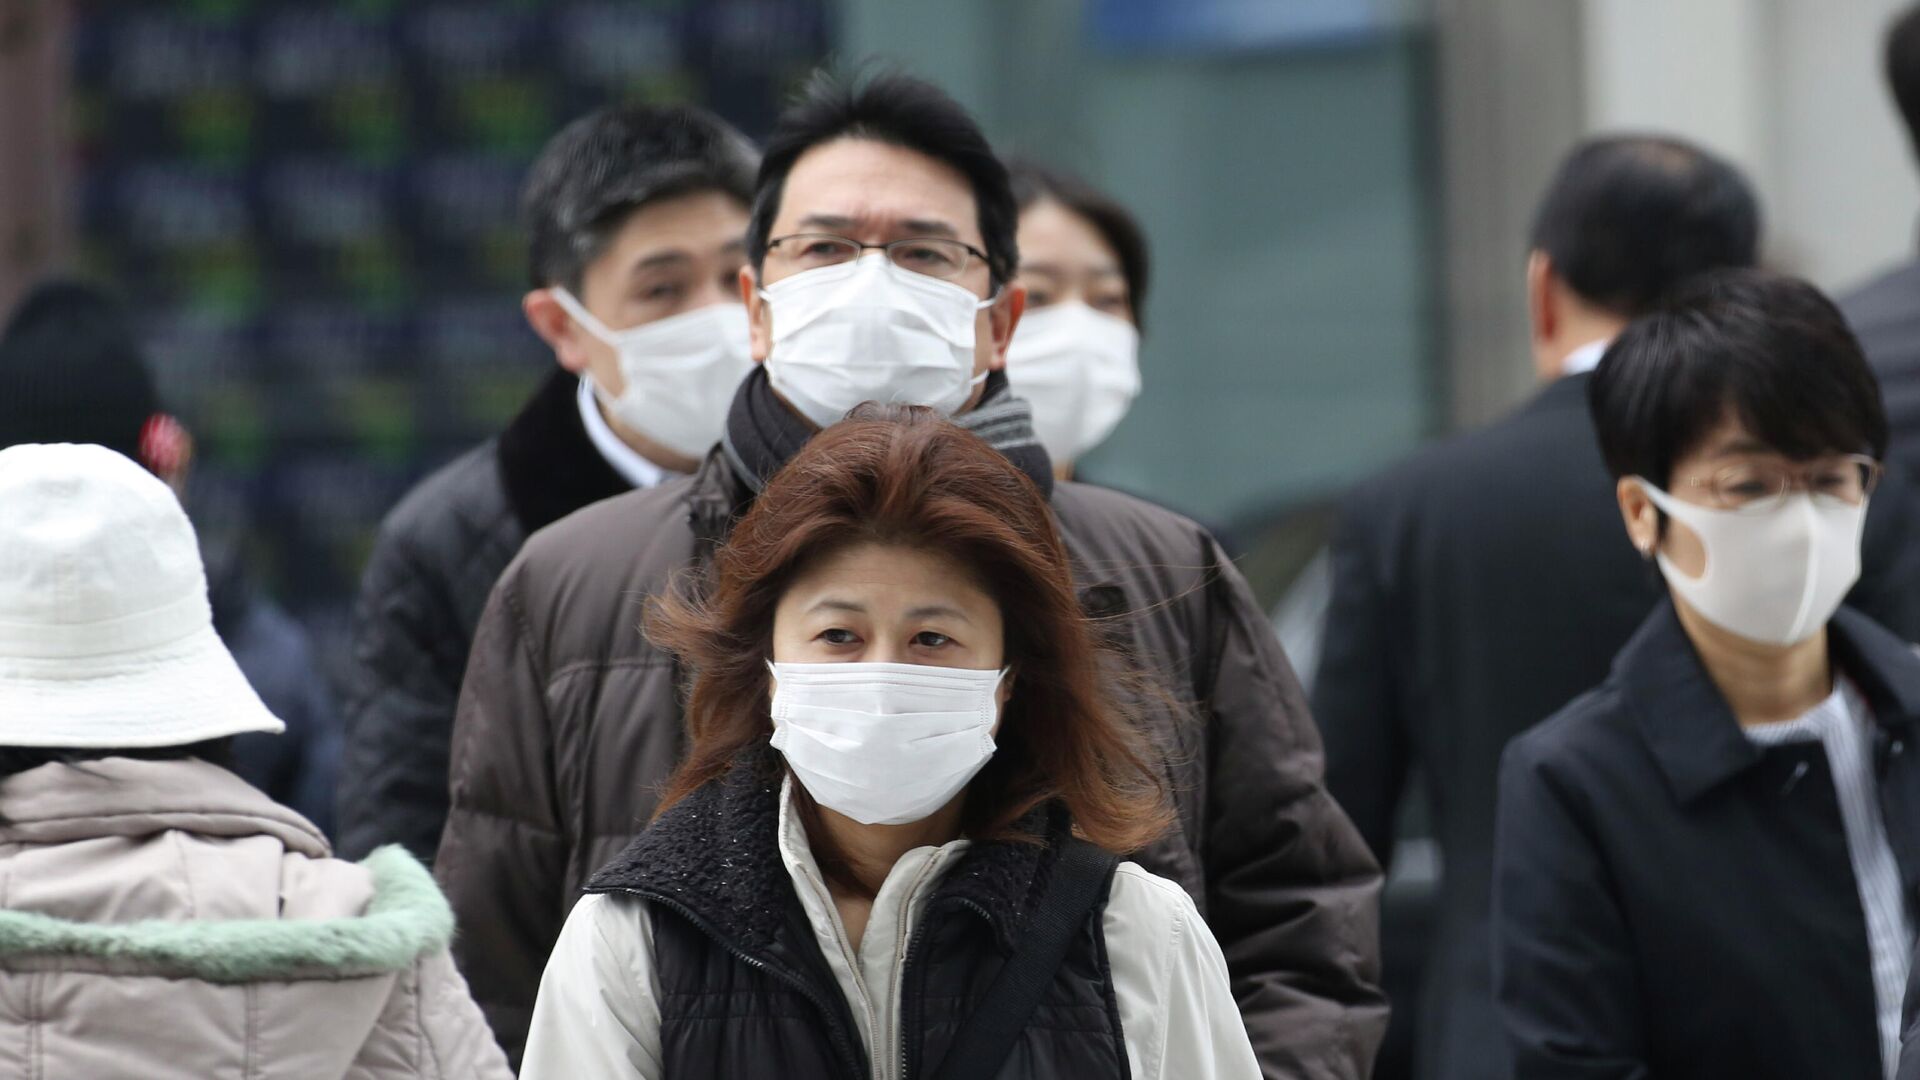 Прохожие в защитных масках на улице Токио, Япония. 17 февраля 2020 - РИА Новости, 1920, 10.01.2021